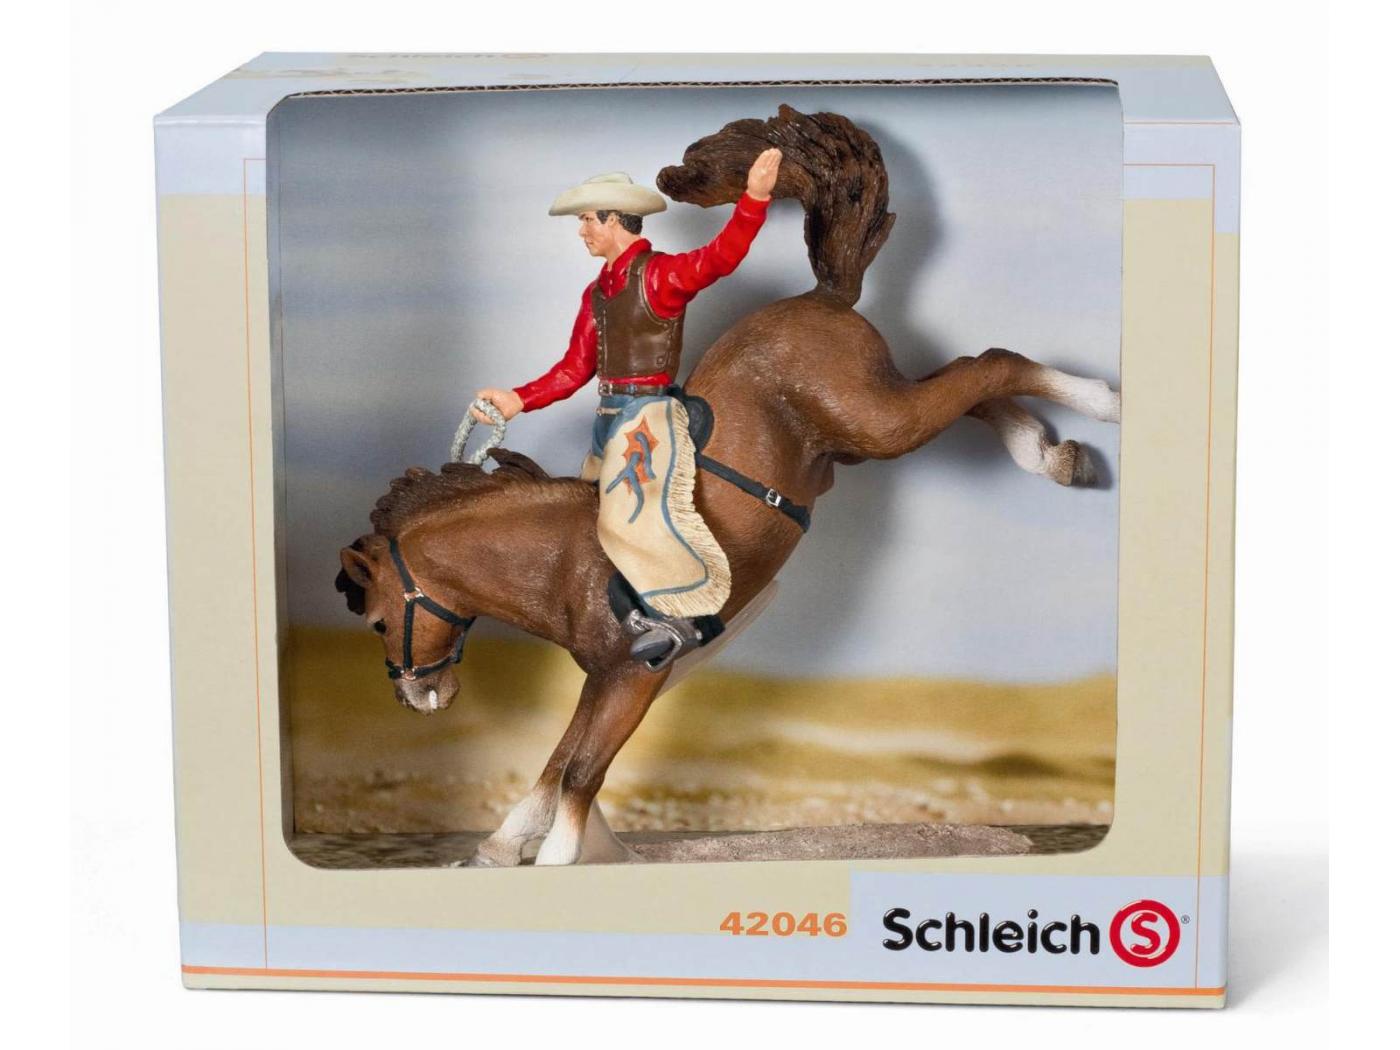 Schleich - Set d'équitation, rodéo 20 cm X 11.5 cm X 17.5 cm